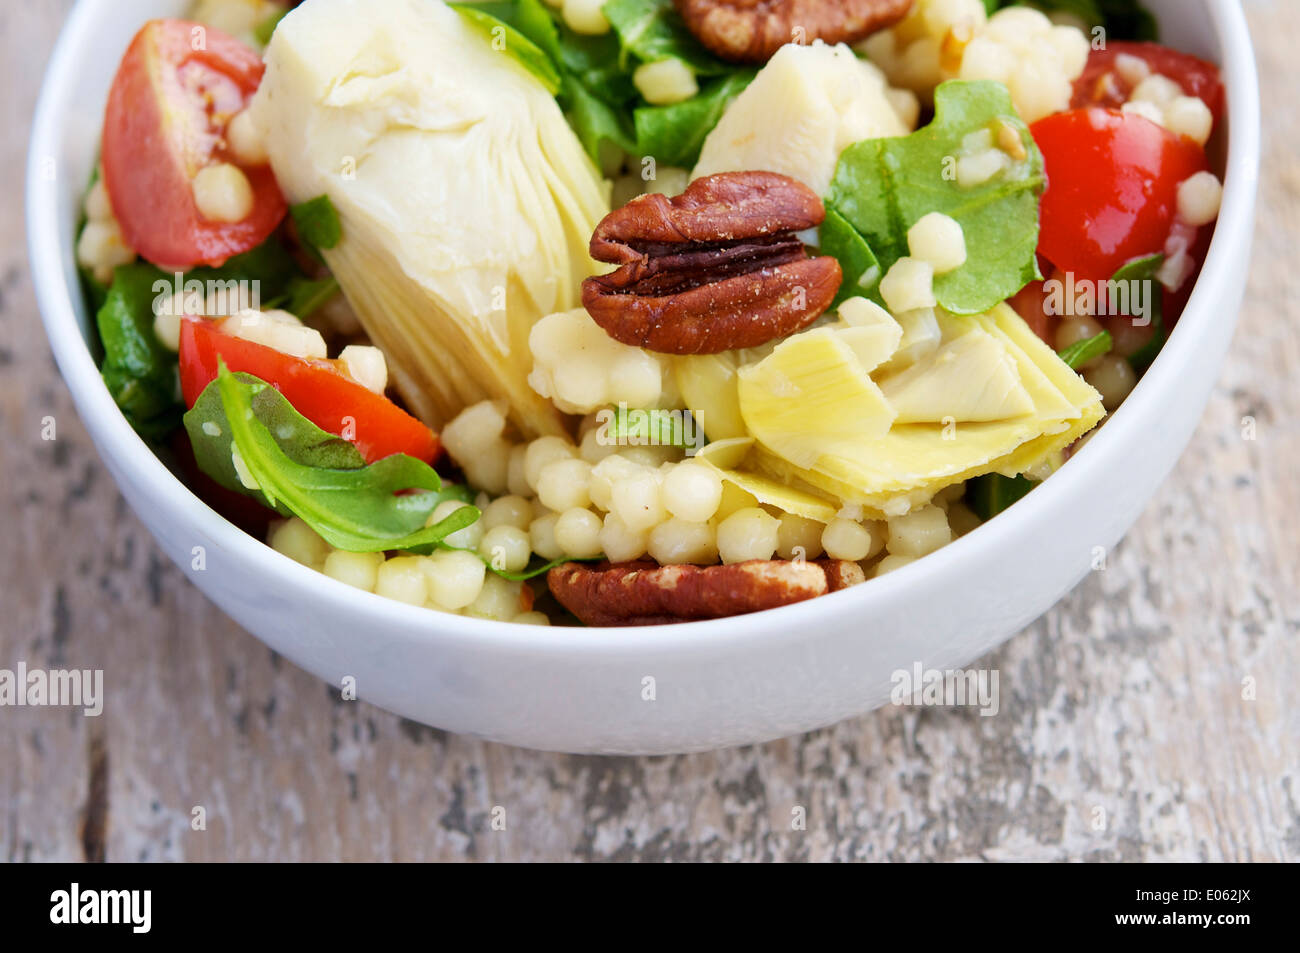 Une salade rafraîchissante avec des coeurs d'artichaut, grand couscous (couscous) Jérusalem, feuilles argula, tomates cerises et pacanes grillées. Banque D'Images